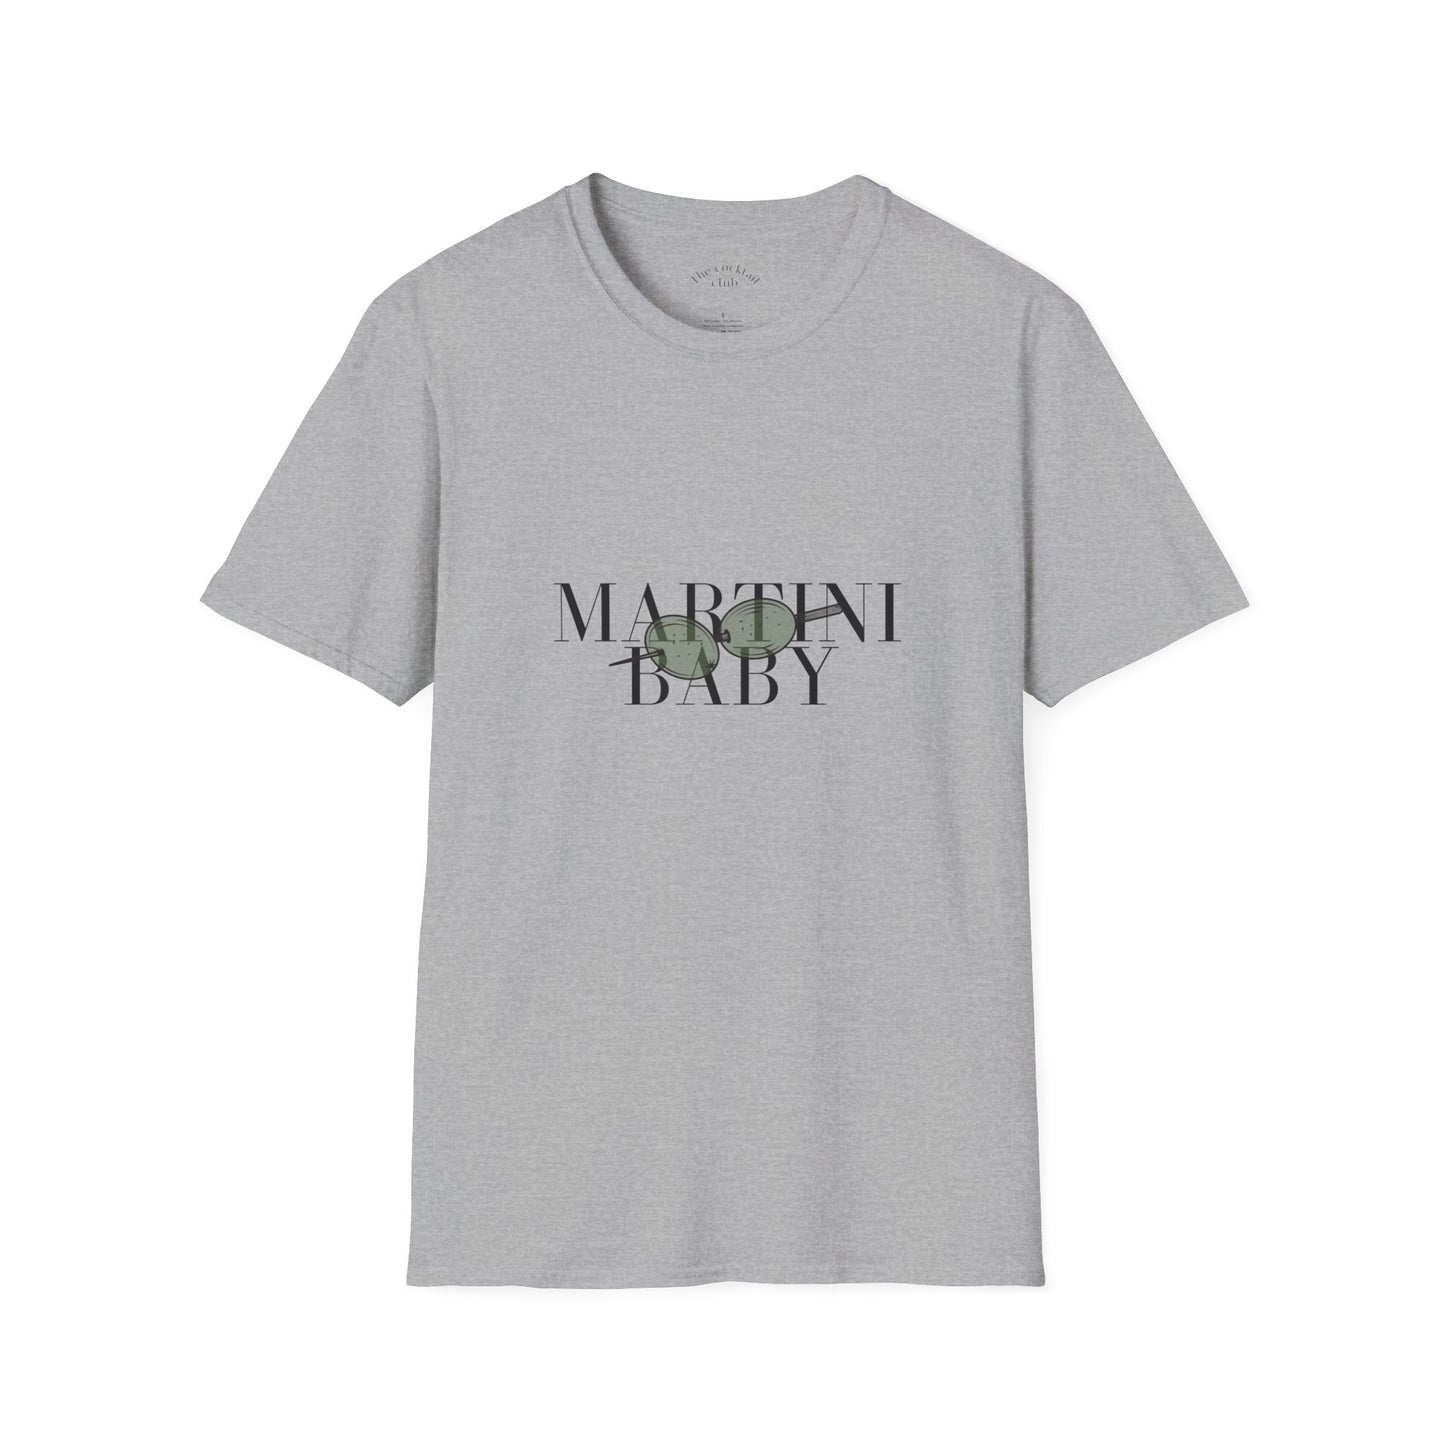 T.C.C Martini baby T-Shirt